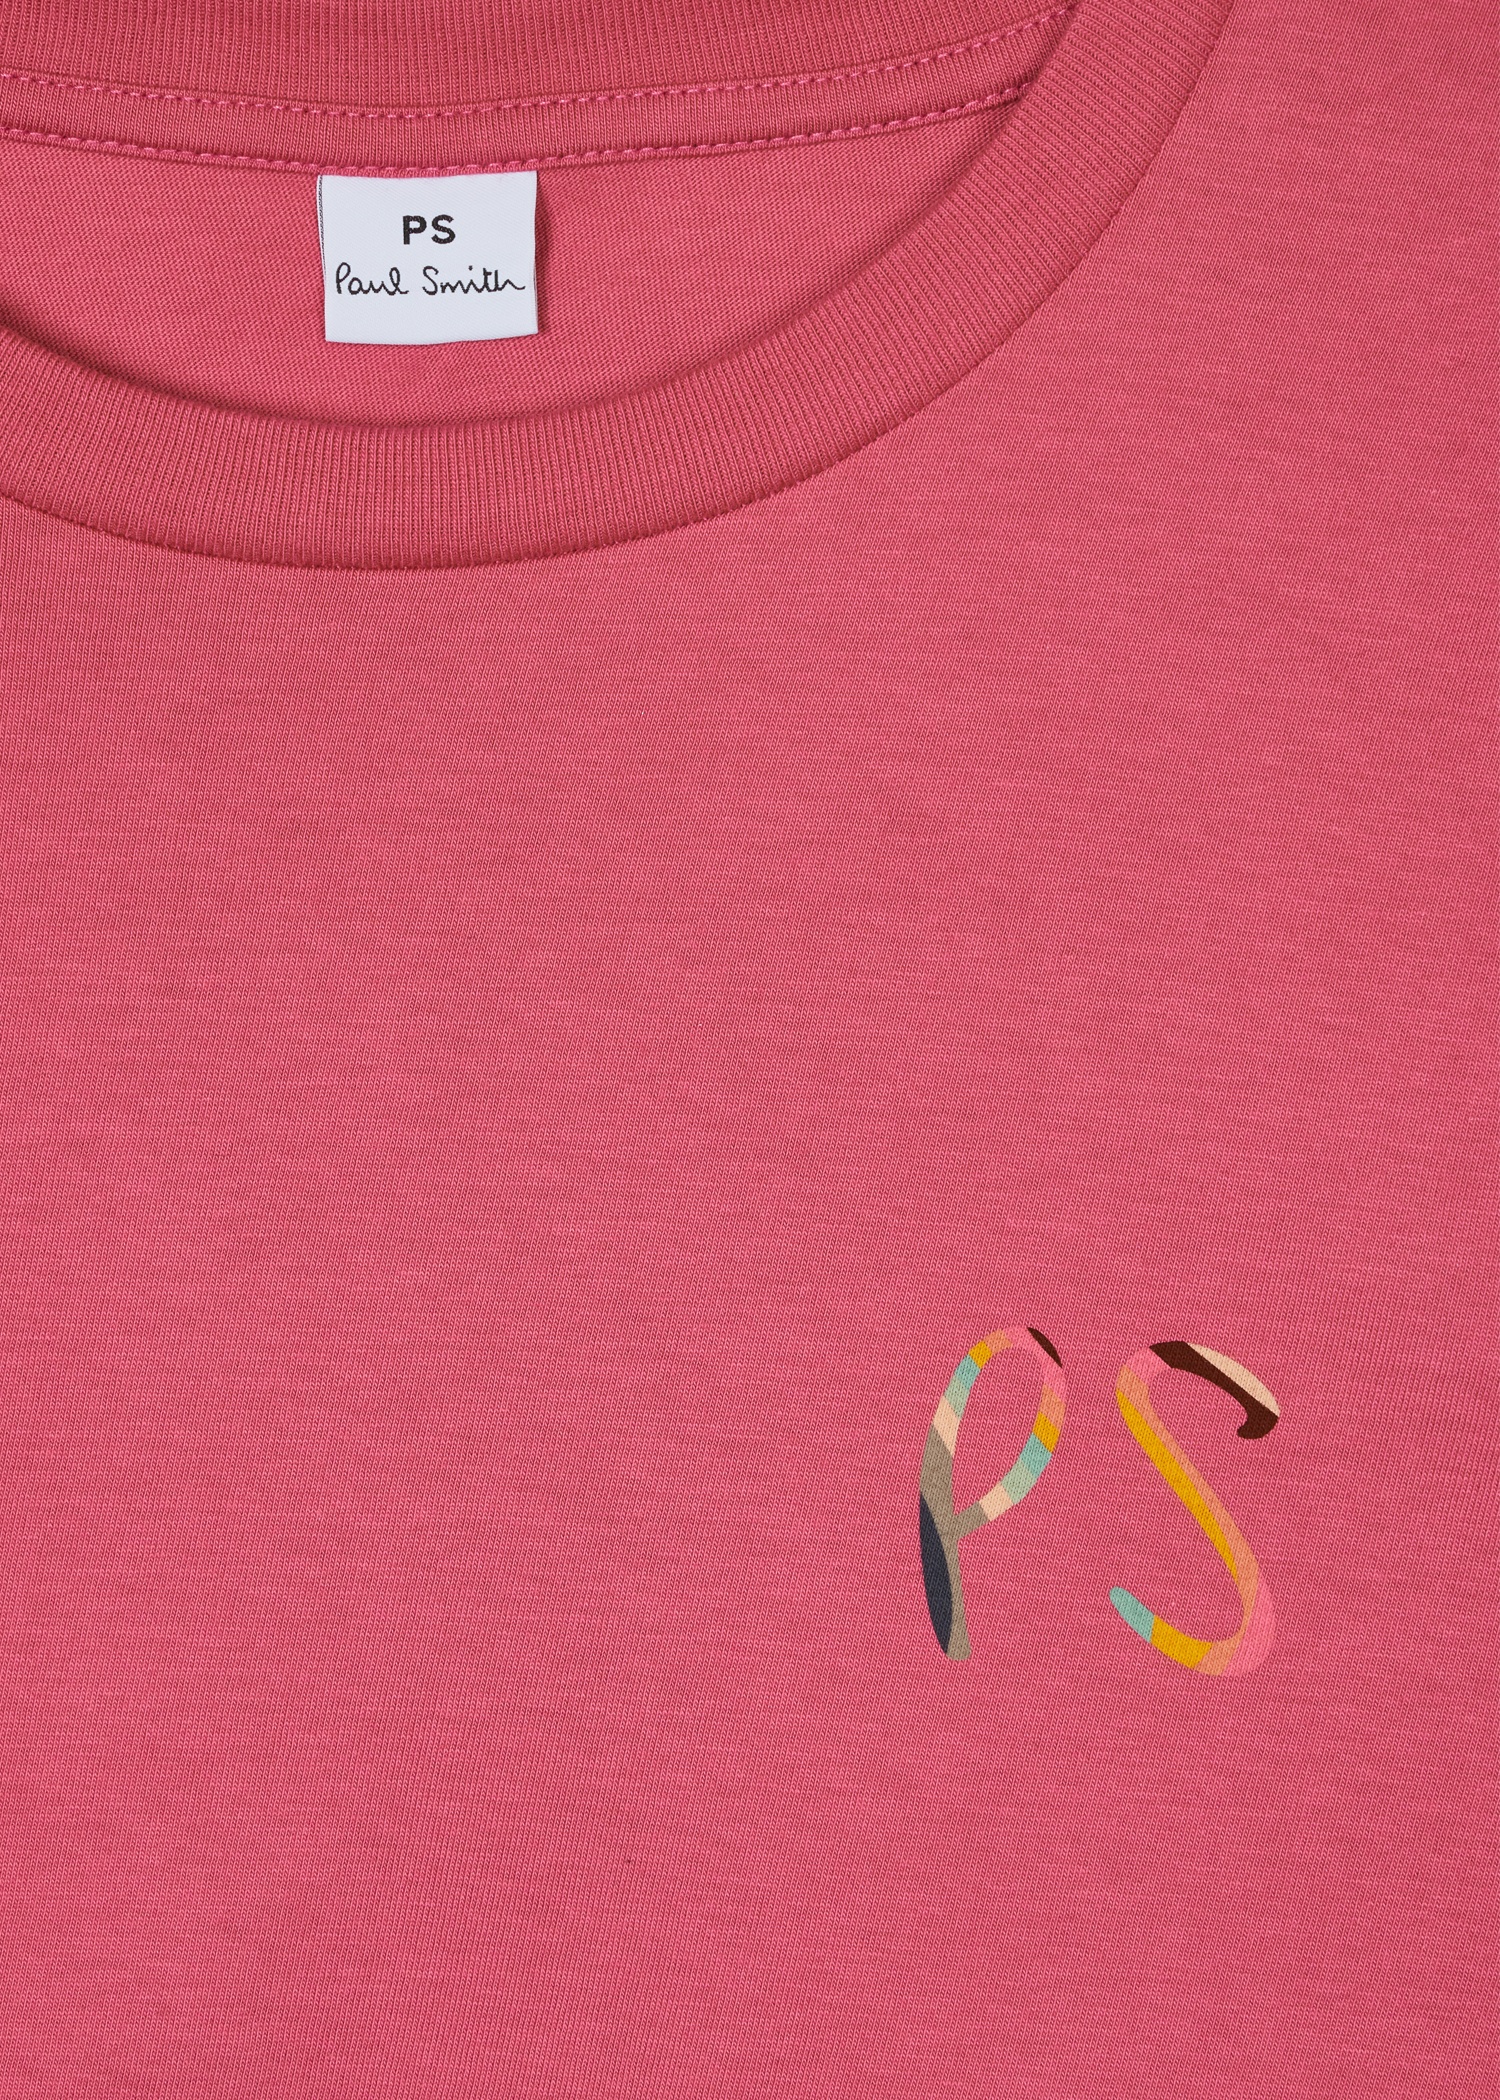 Women's Dark Pink 'Swirl' PS Logo T-Shirt - 2